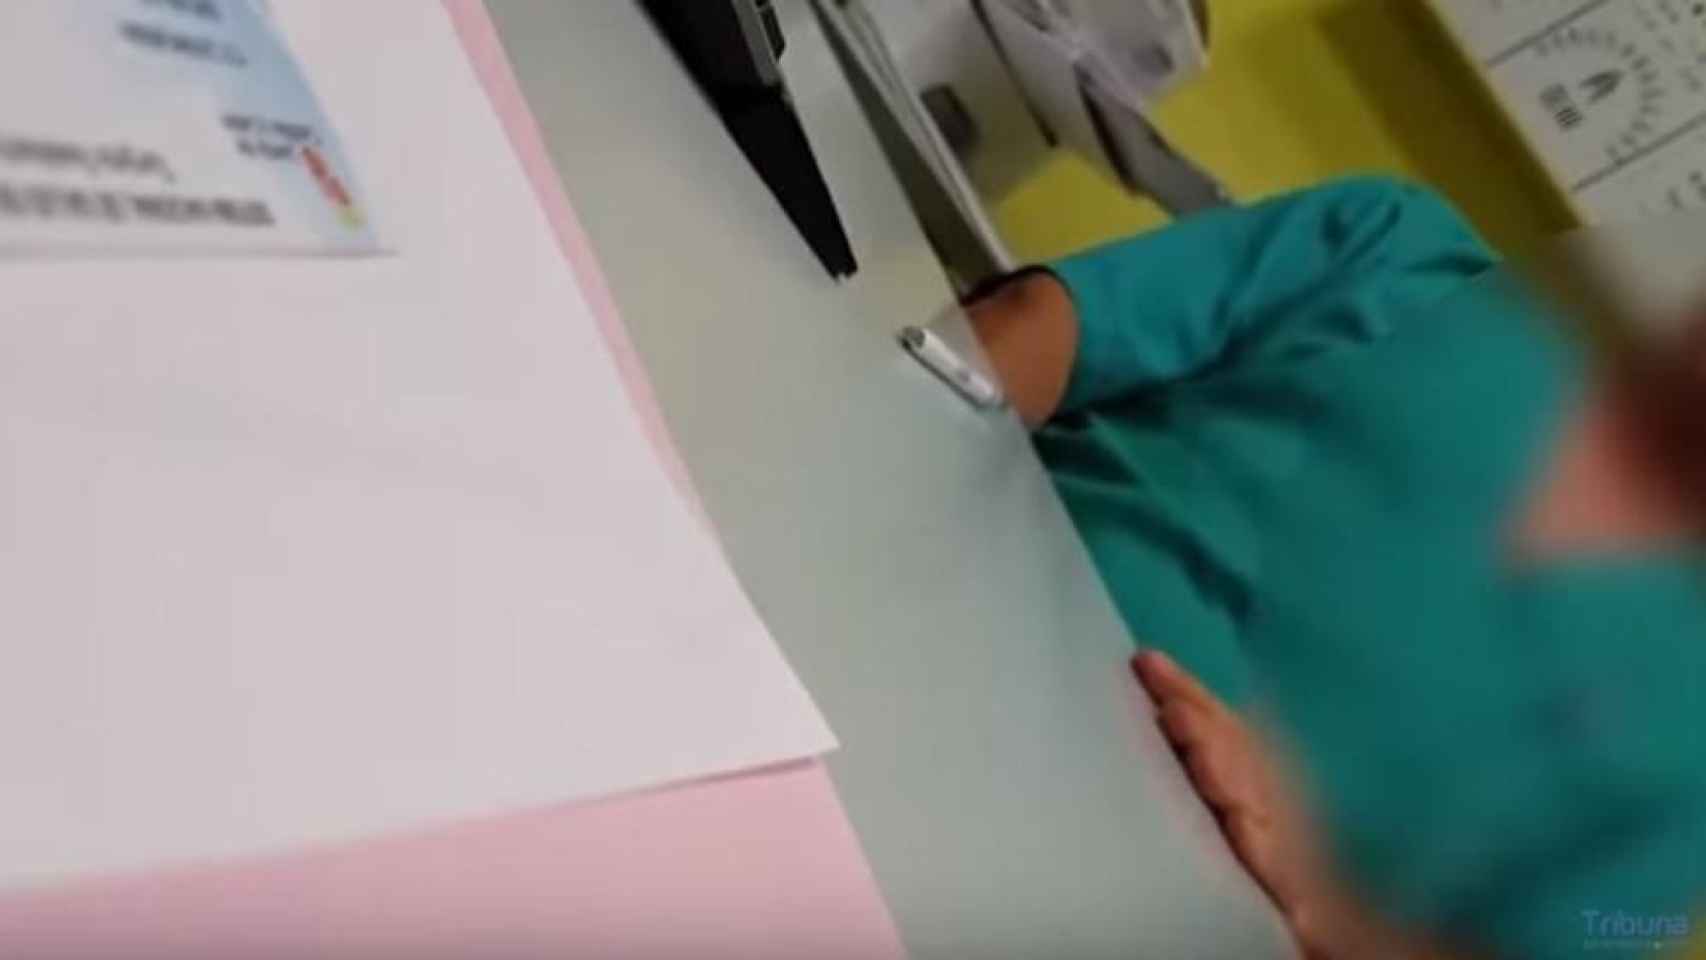 El médico se masturba debajo de la mesa mientras atienda a la paciente